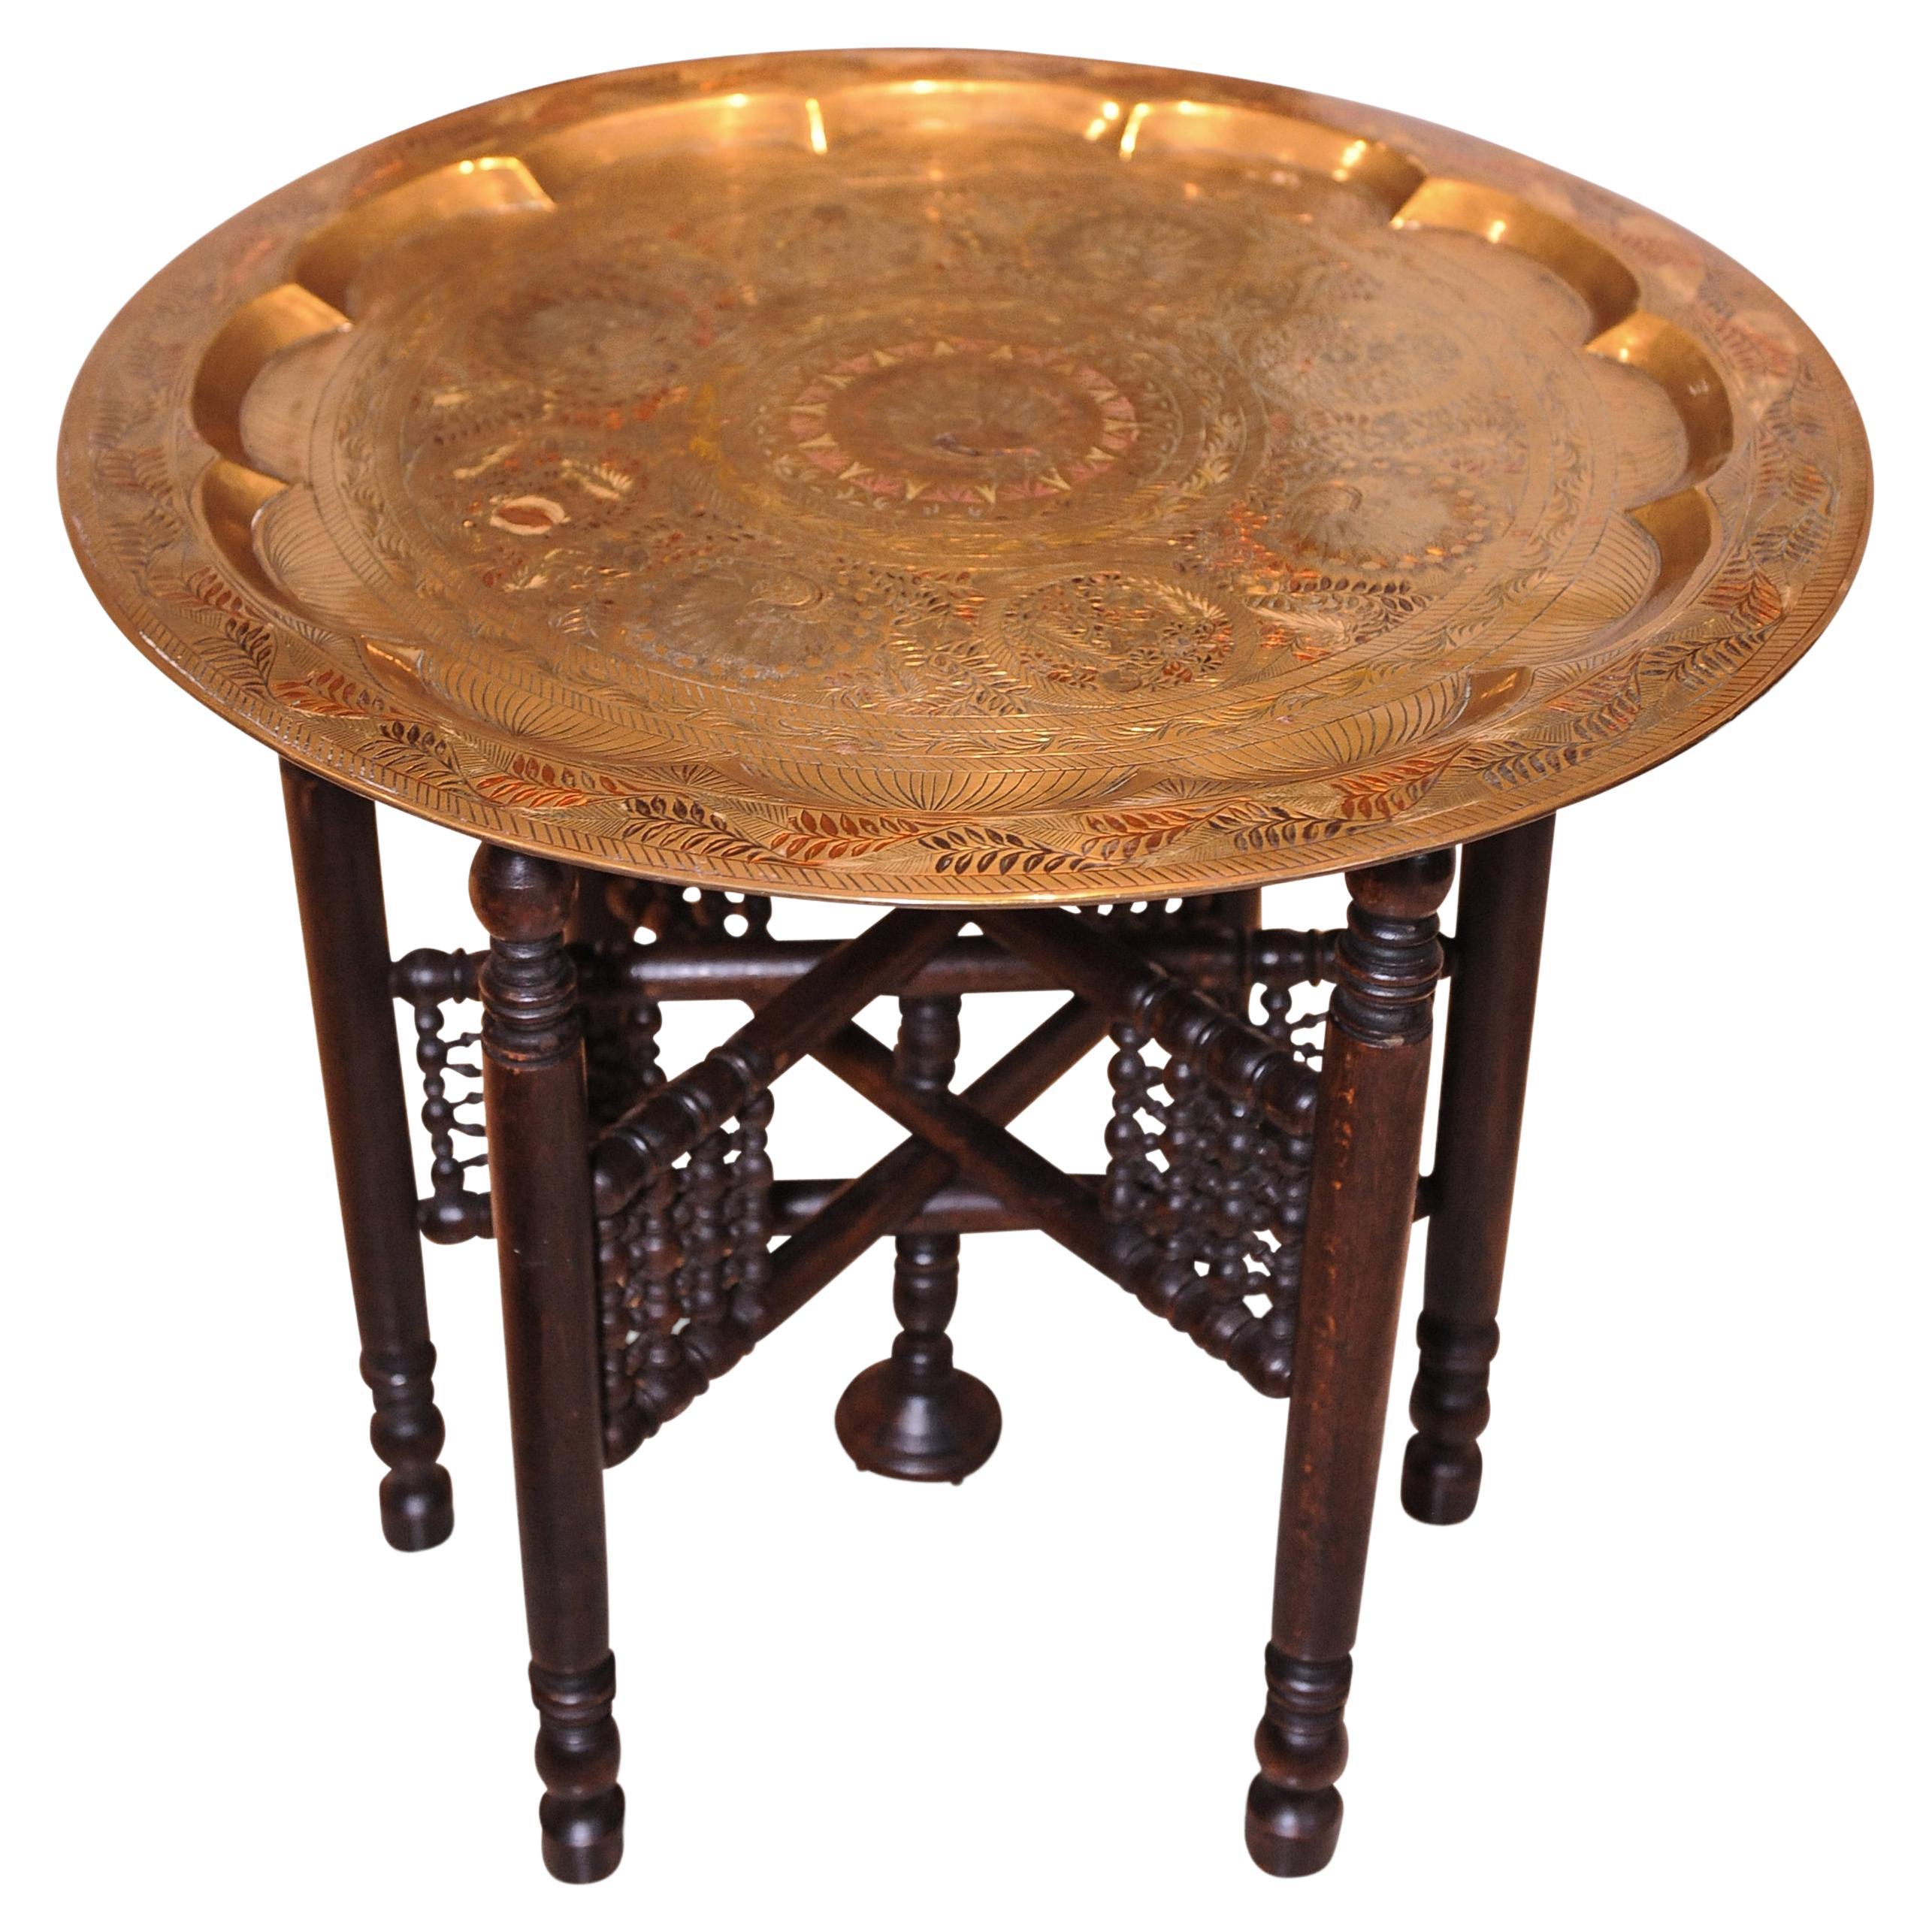 Table du Moyen-Orient en laiton et bois dur décorée de paons, début des années 1900